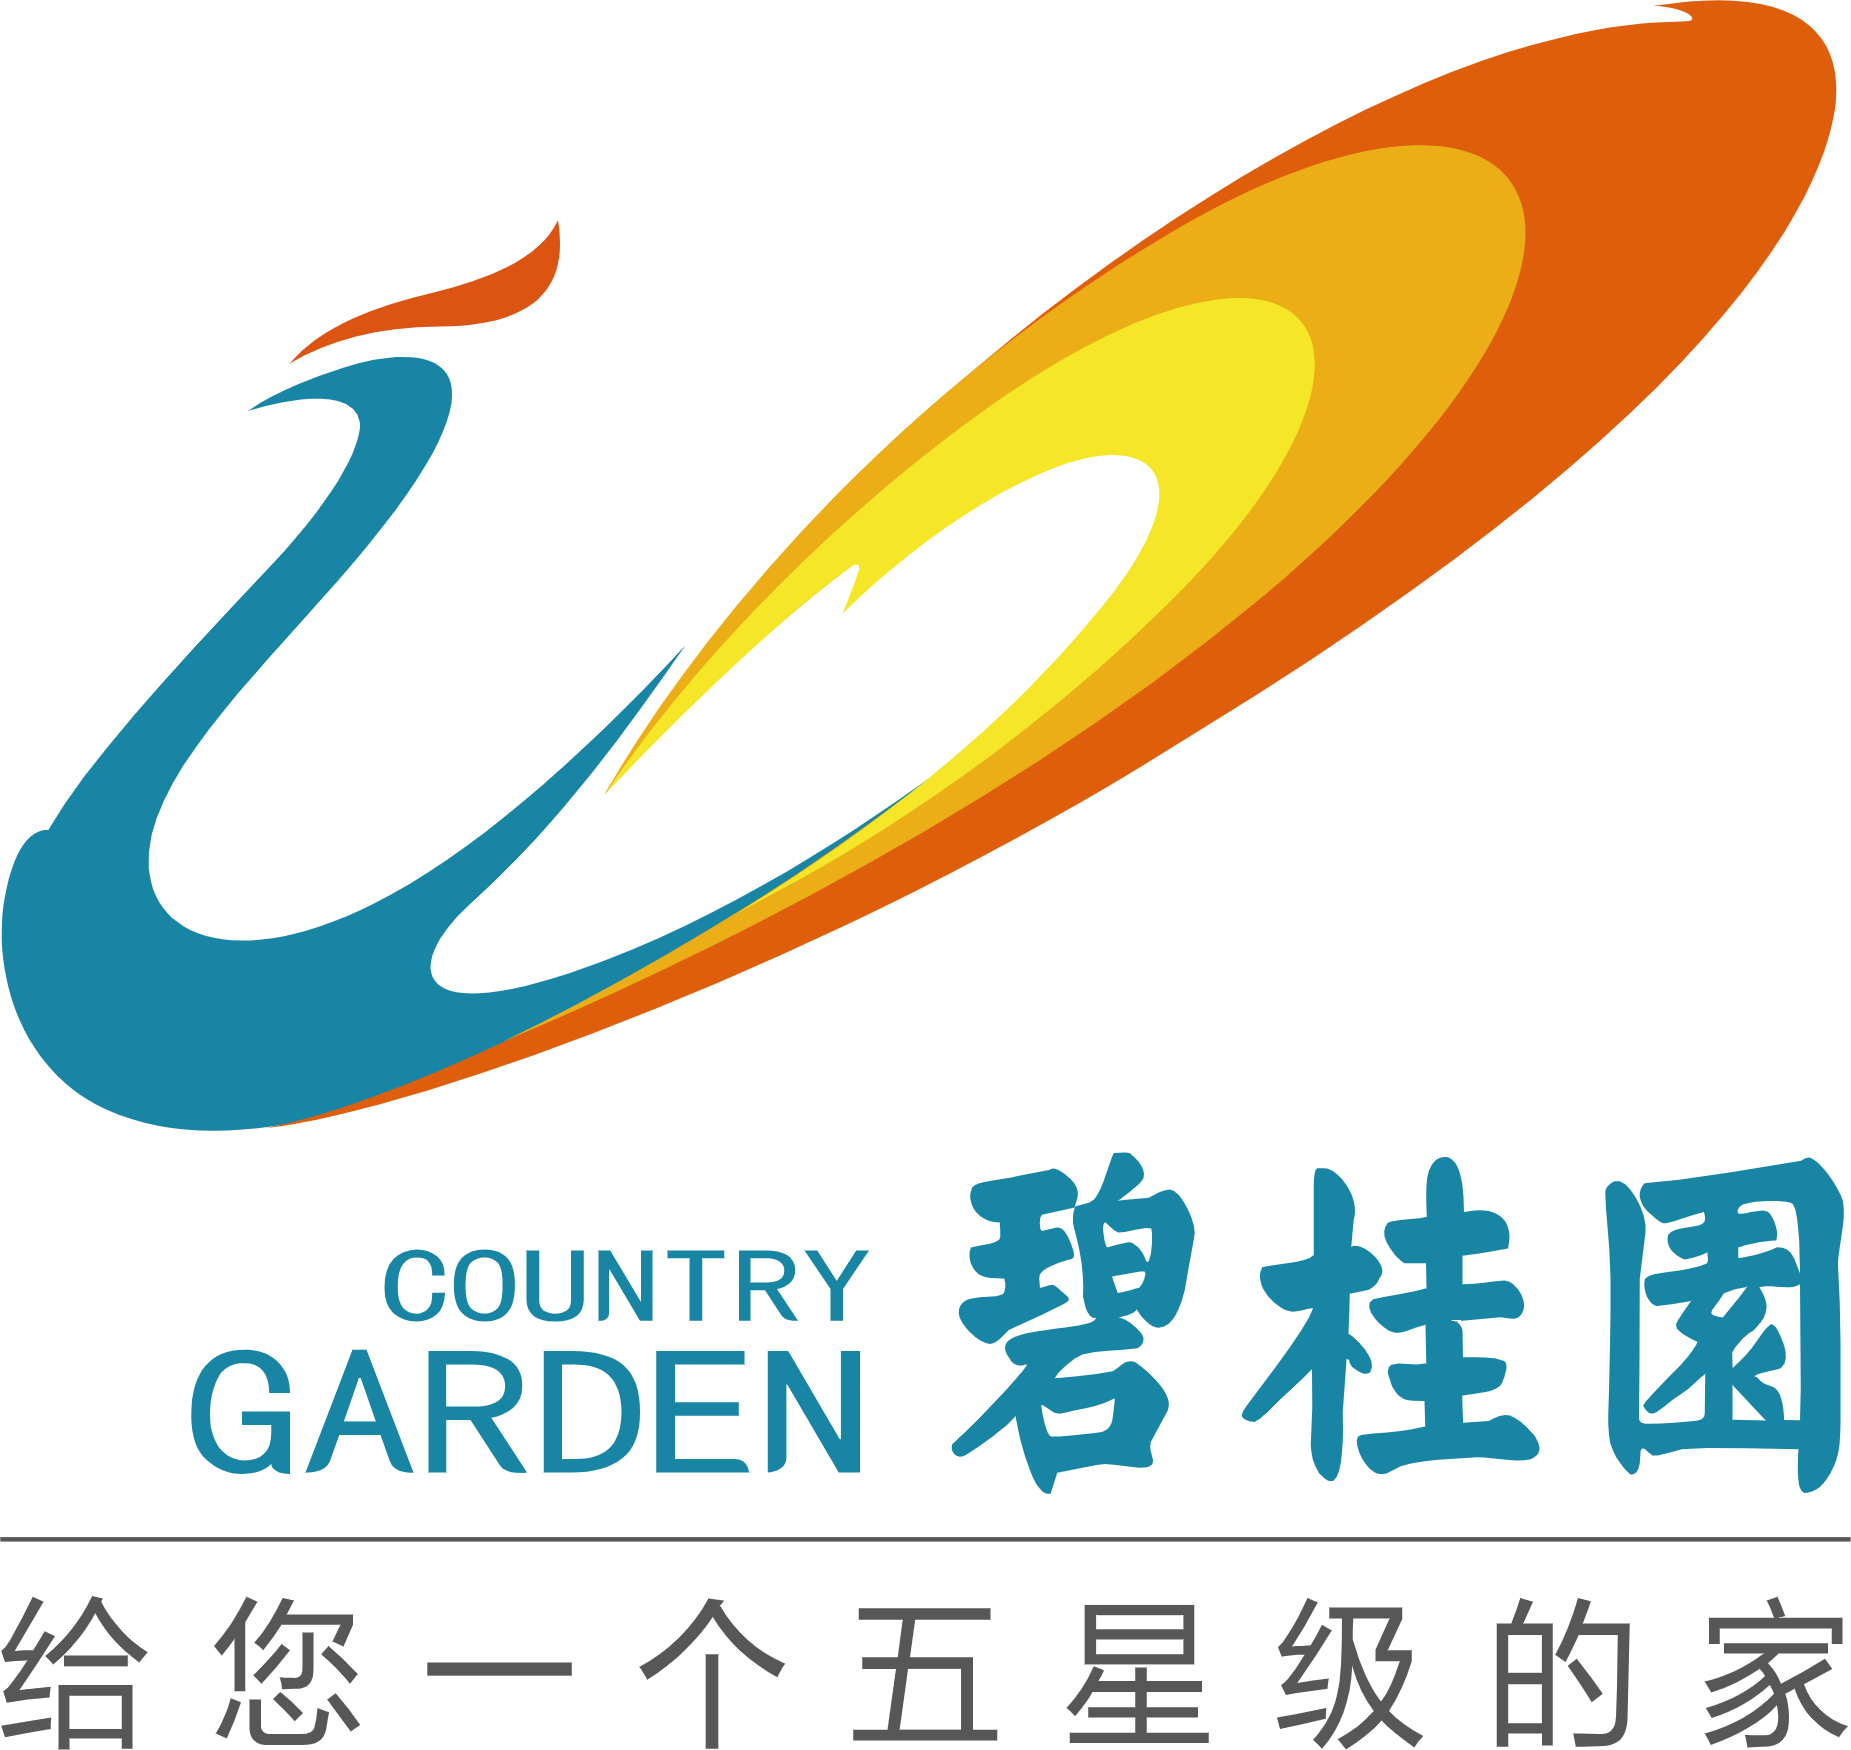 500+ Gardening Logos | Free Garden Logo Maker | LogoDesign